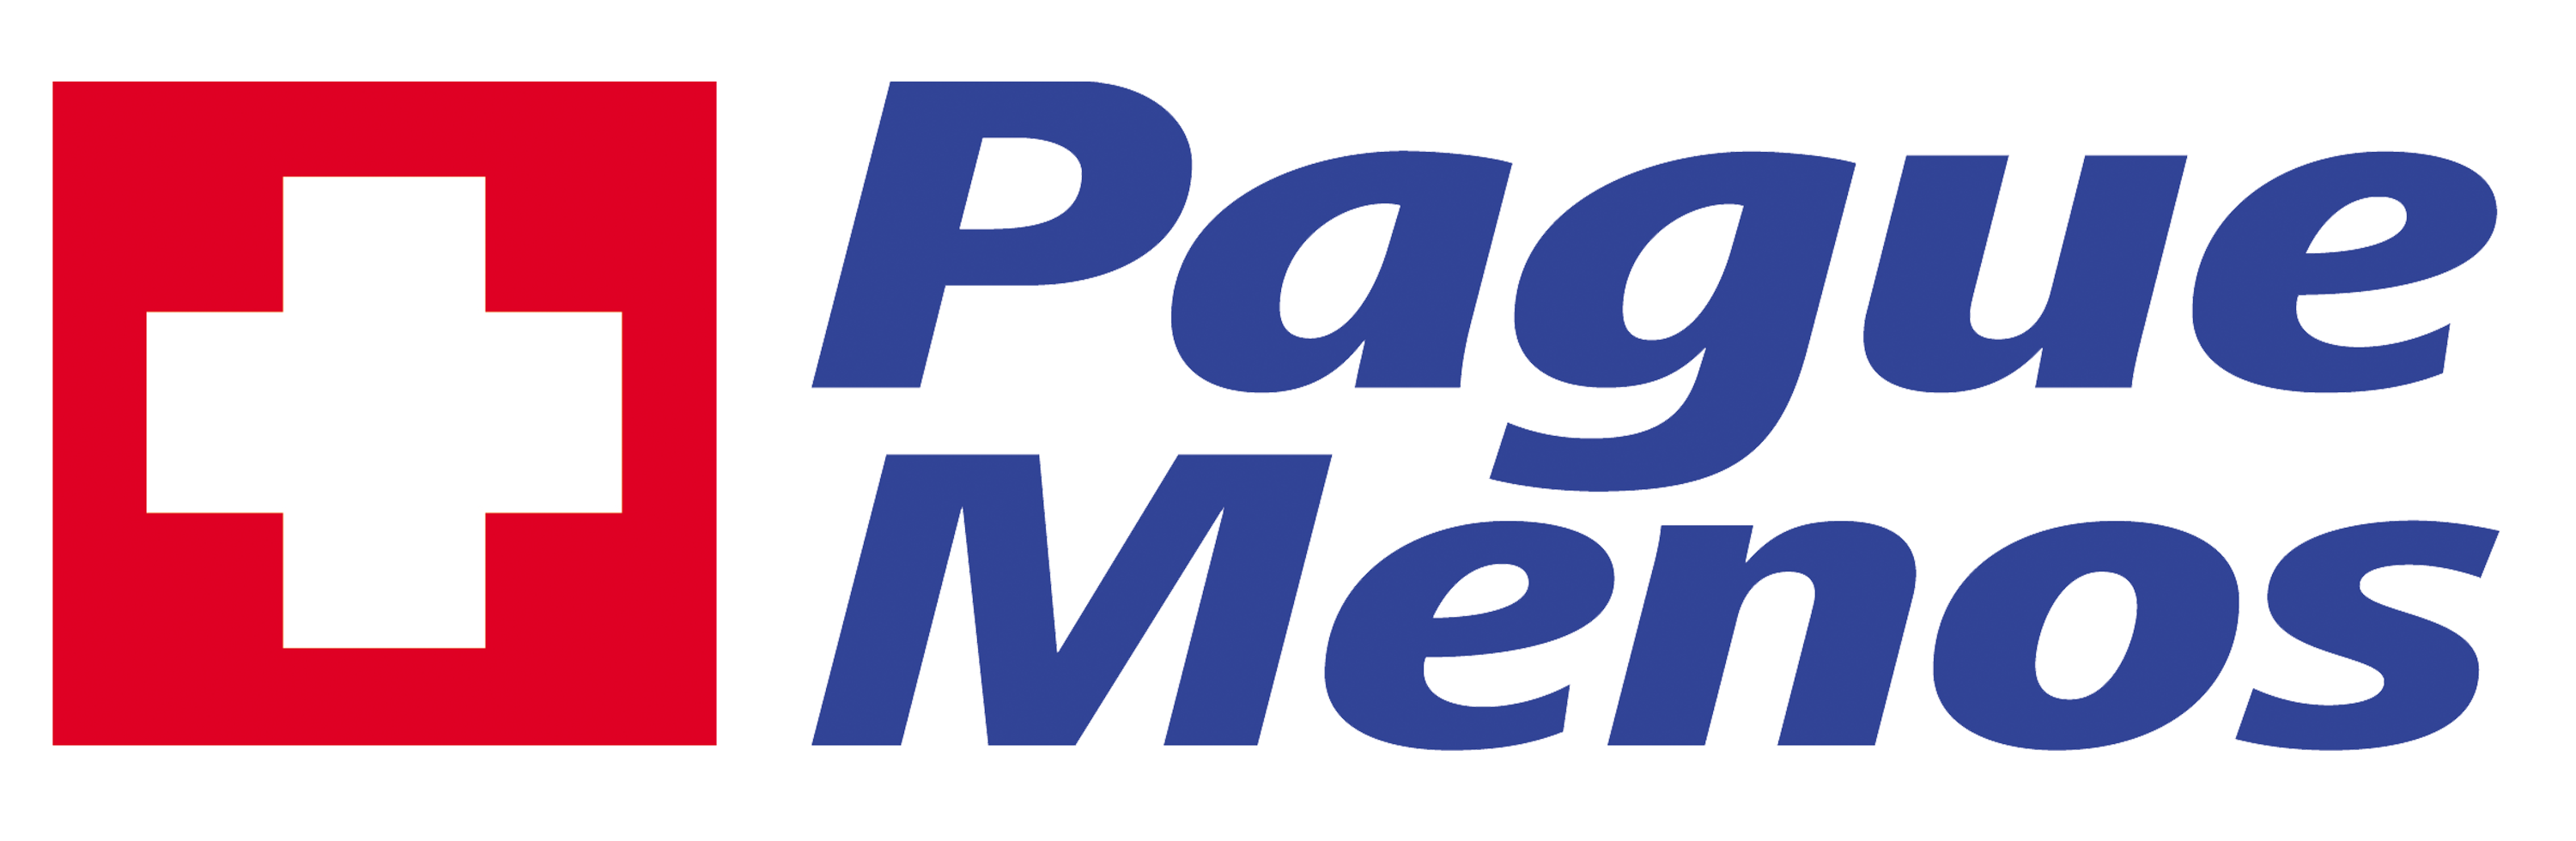 Farmacia Pague Menos - Fonseca - MG